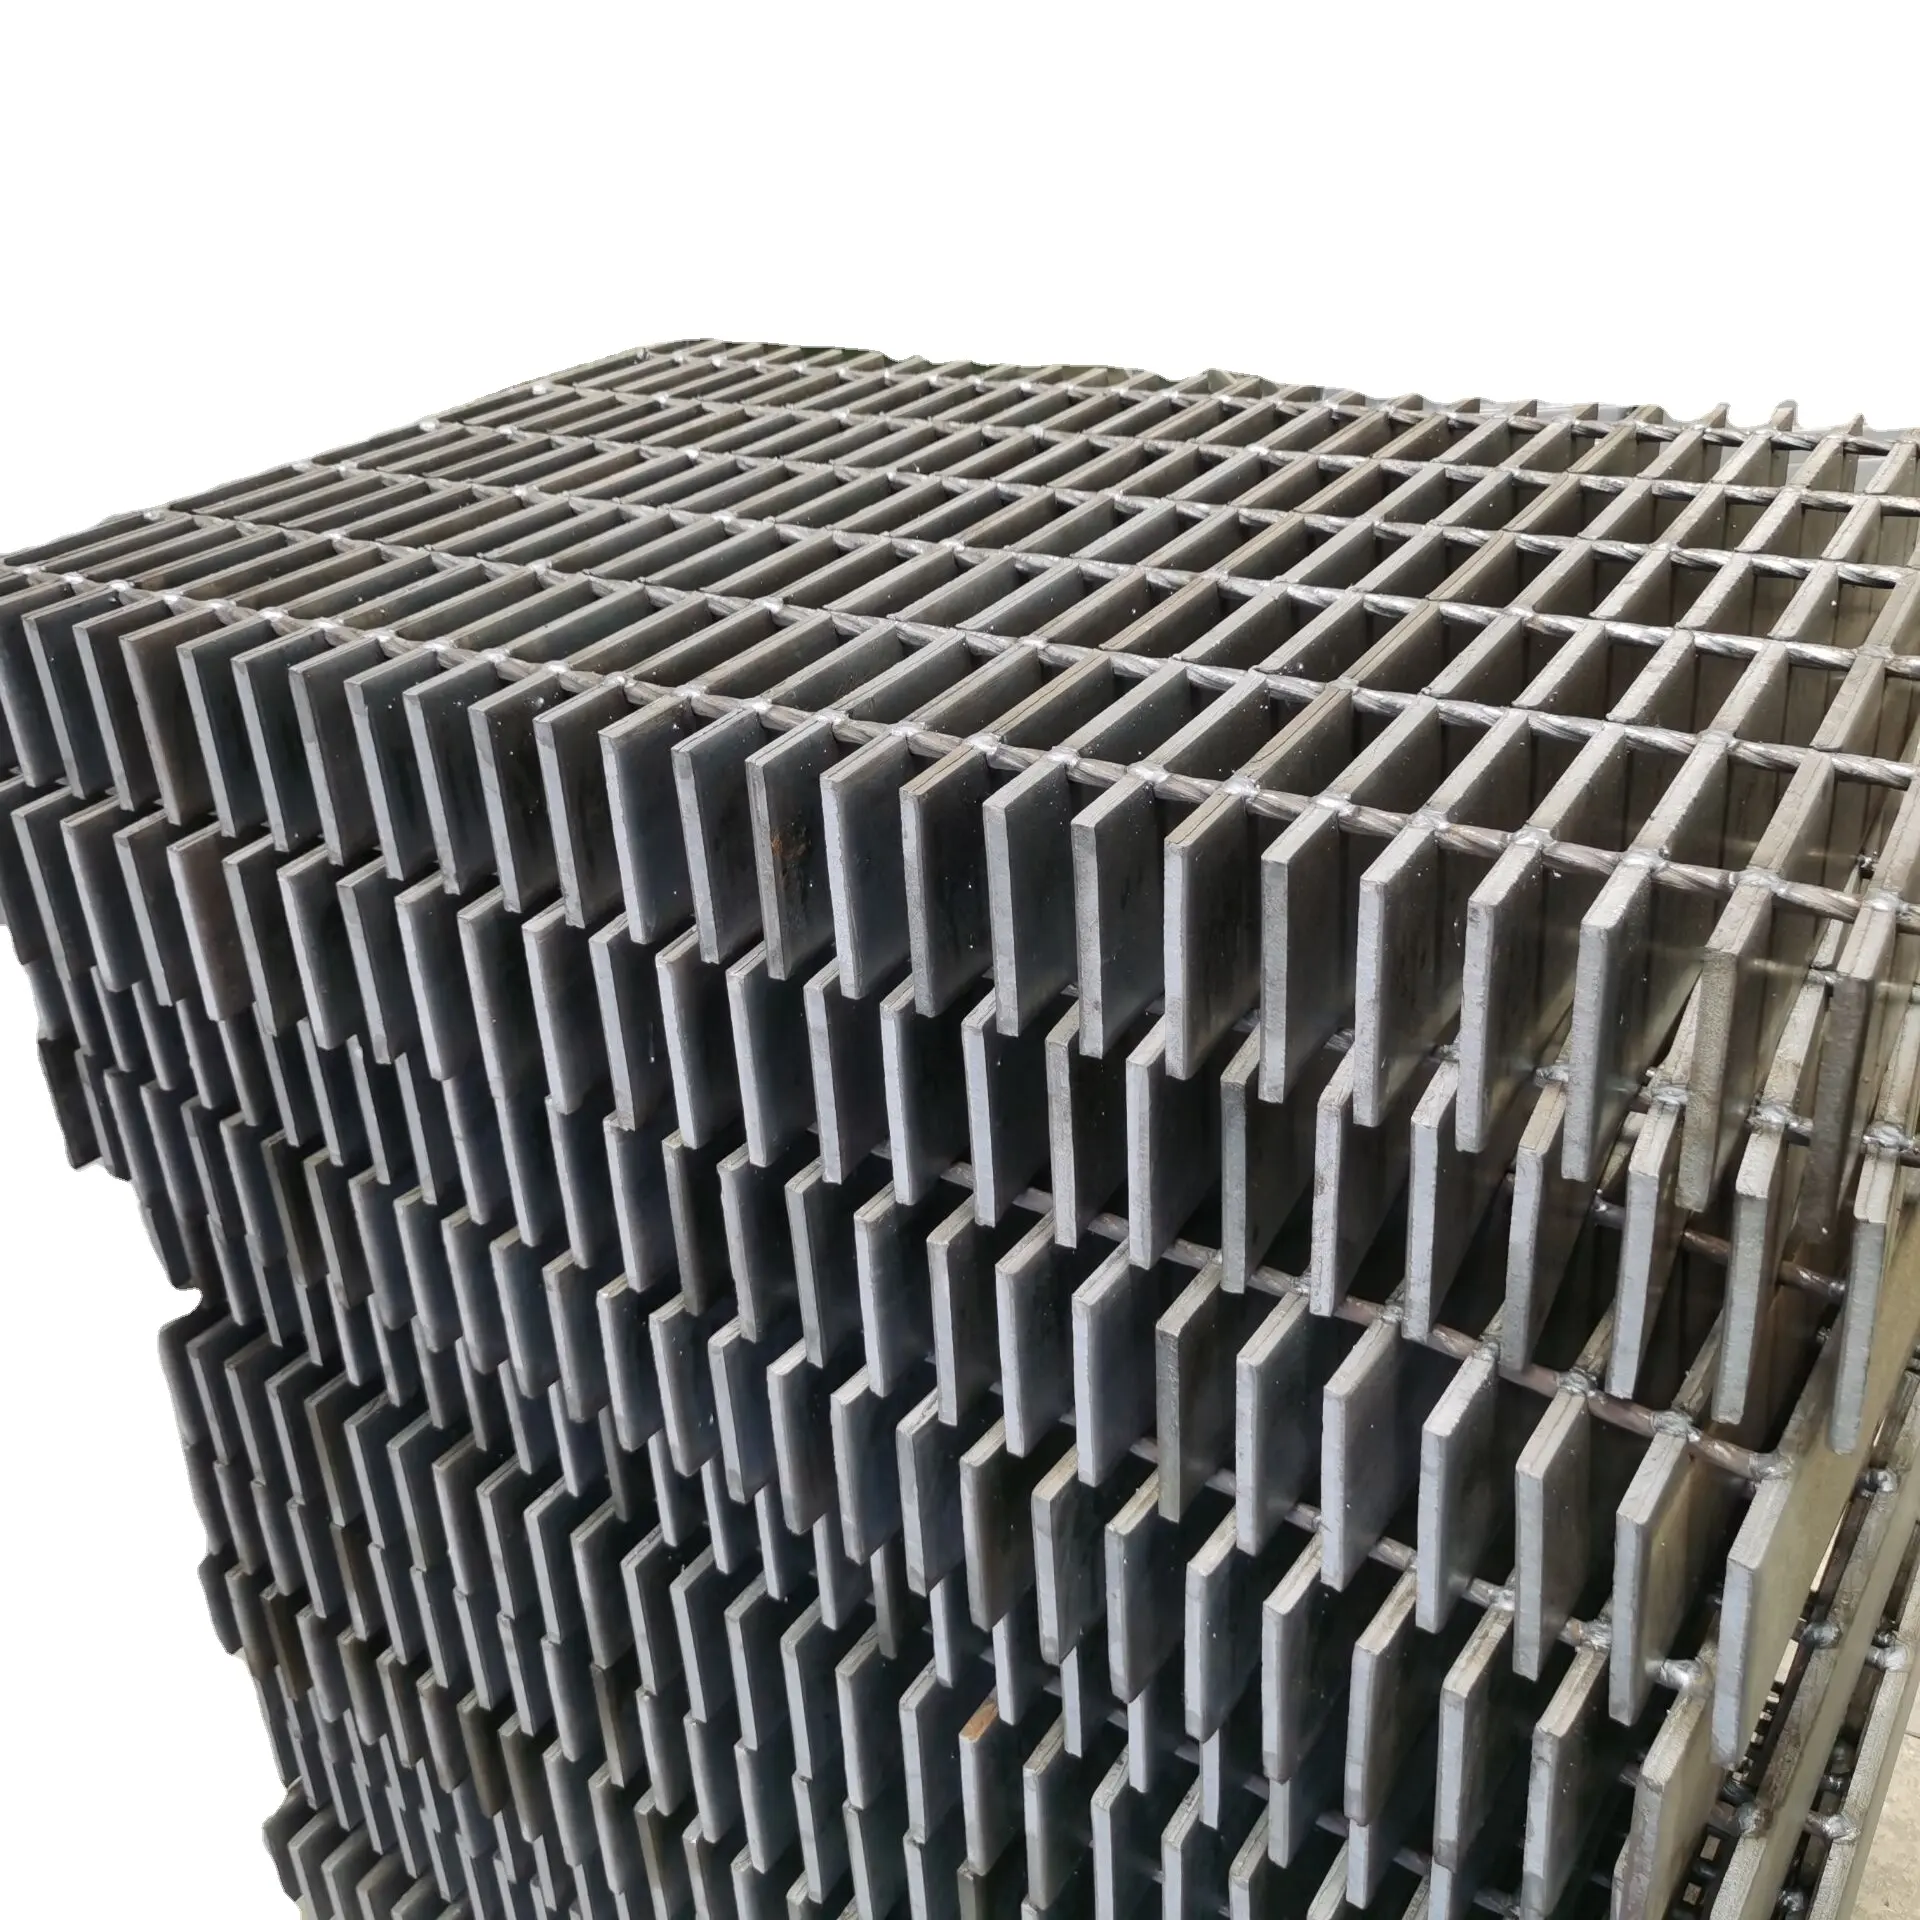 Mergulho a quente aço galvanizado grating placa escada degraus moderno aço escada trilhos design concreto forma metal edifício material